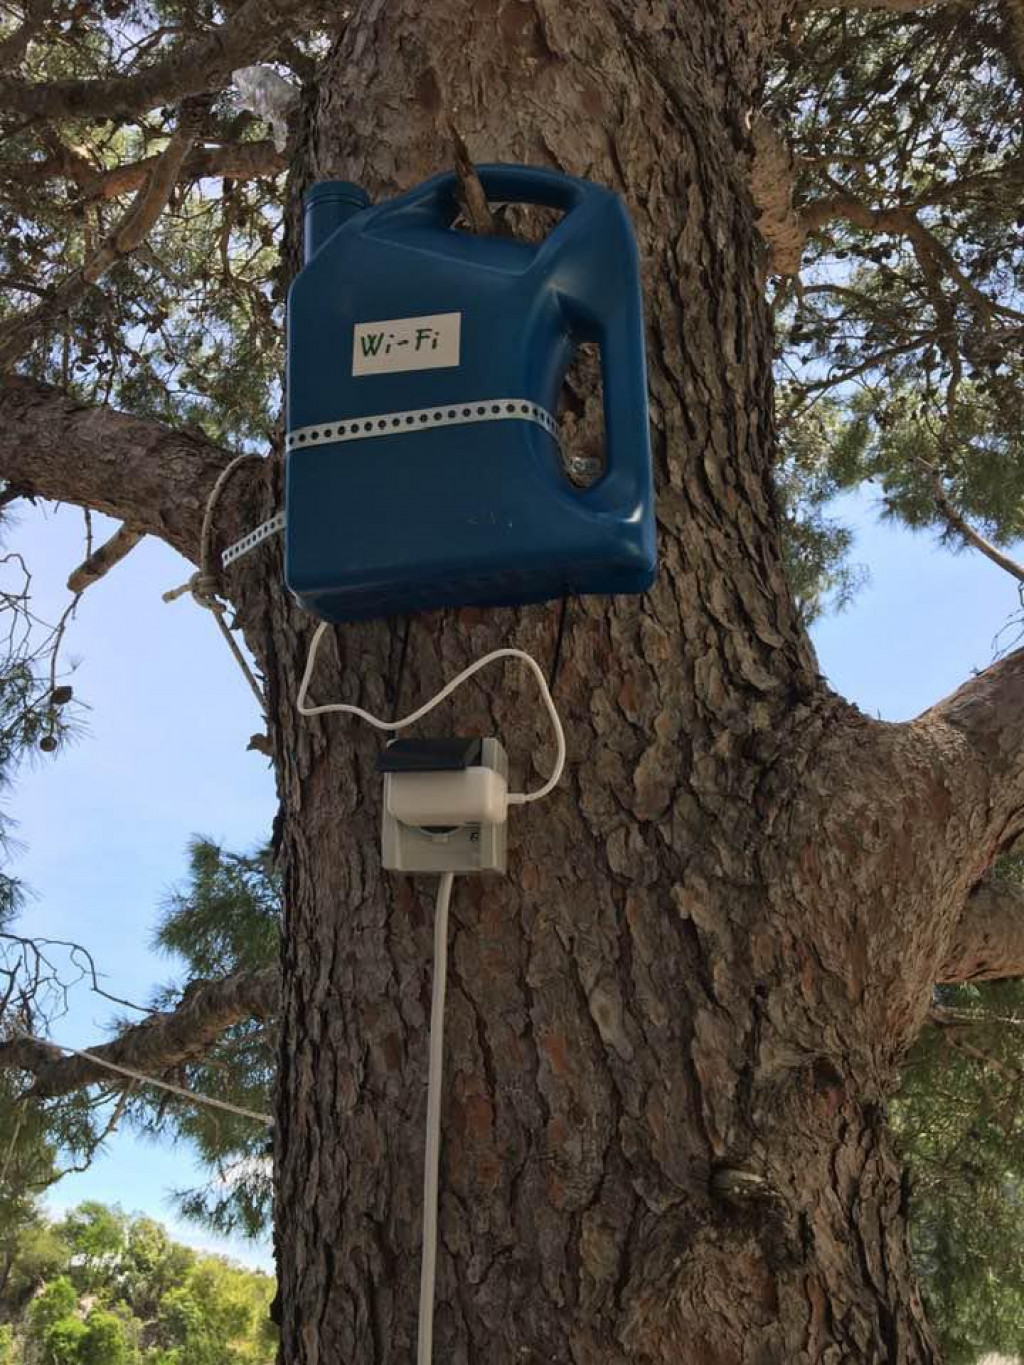 Wi-fi router u kanti na boru